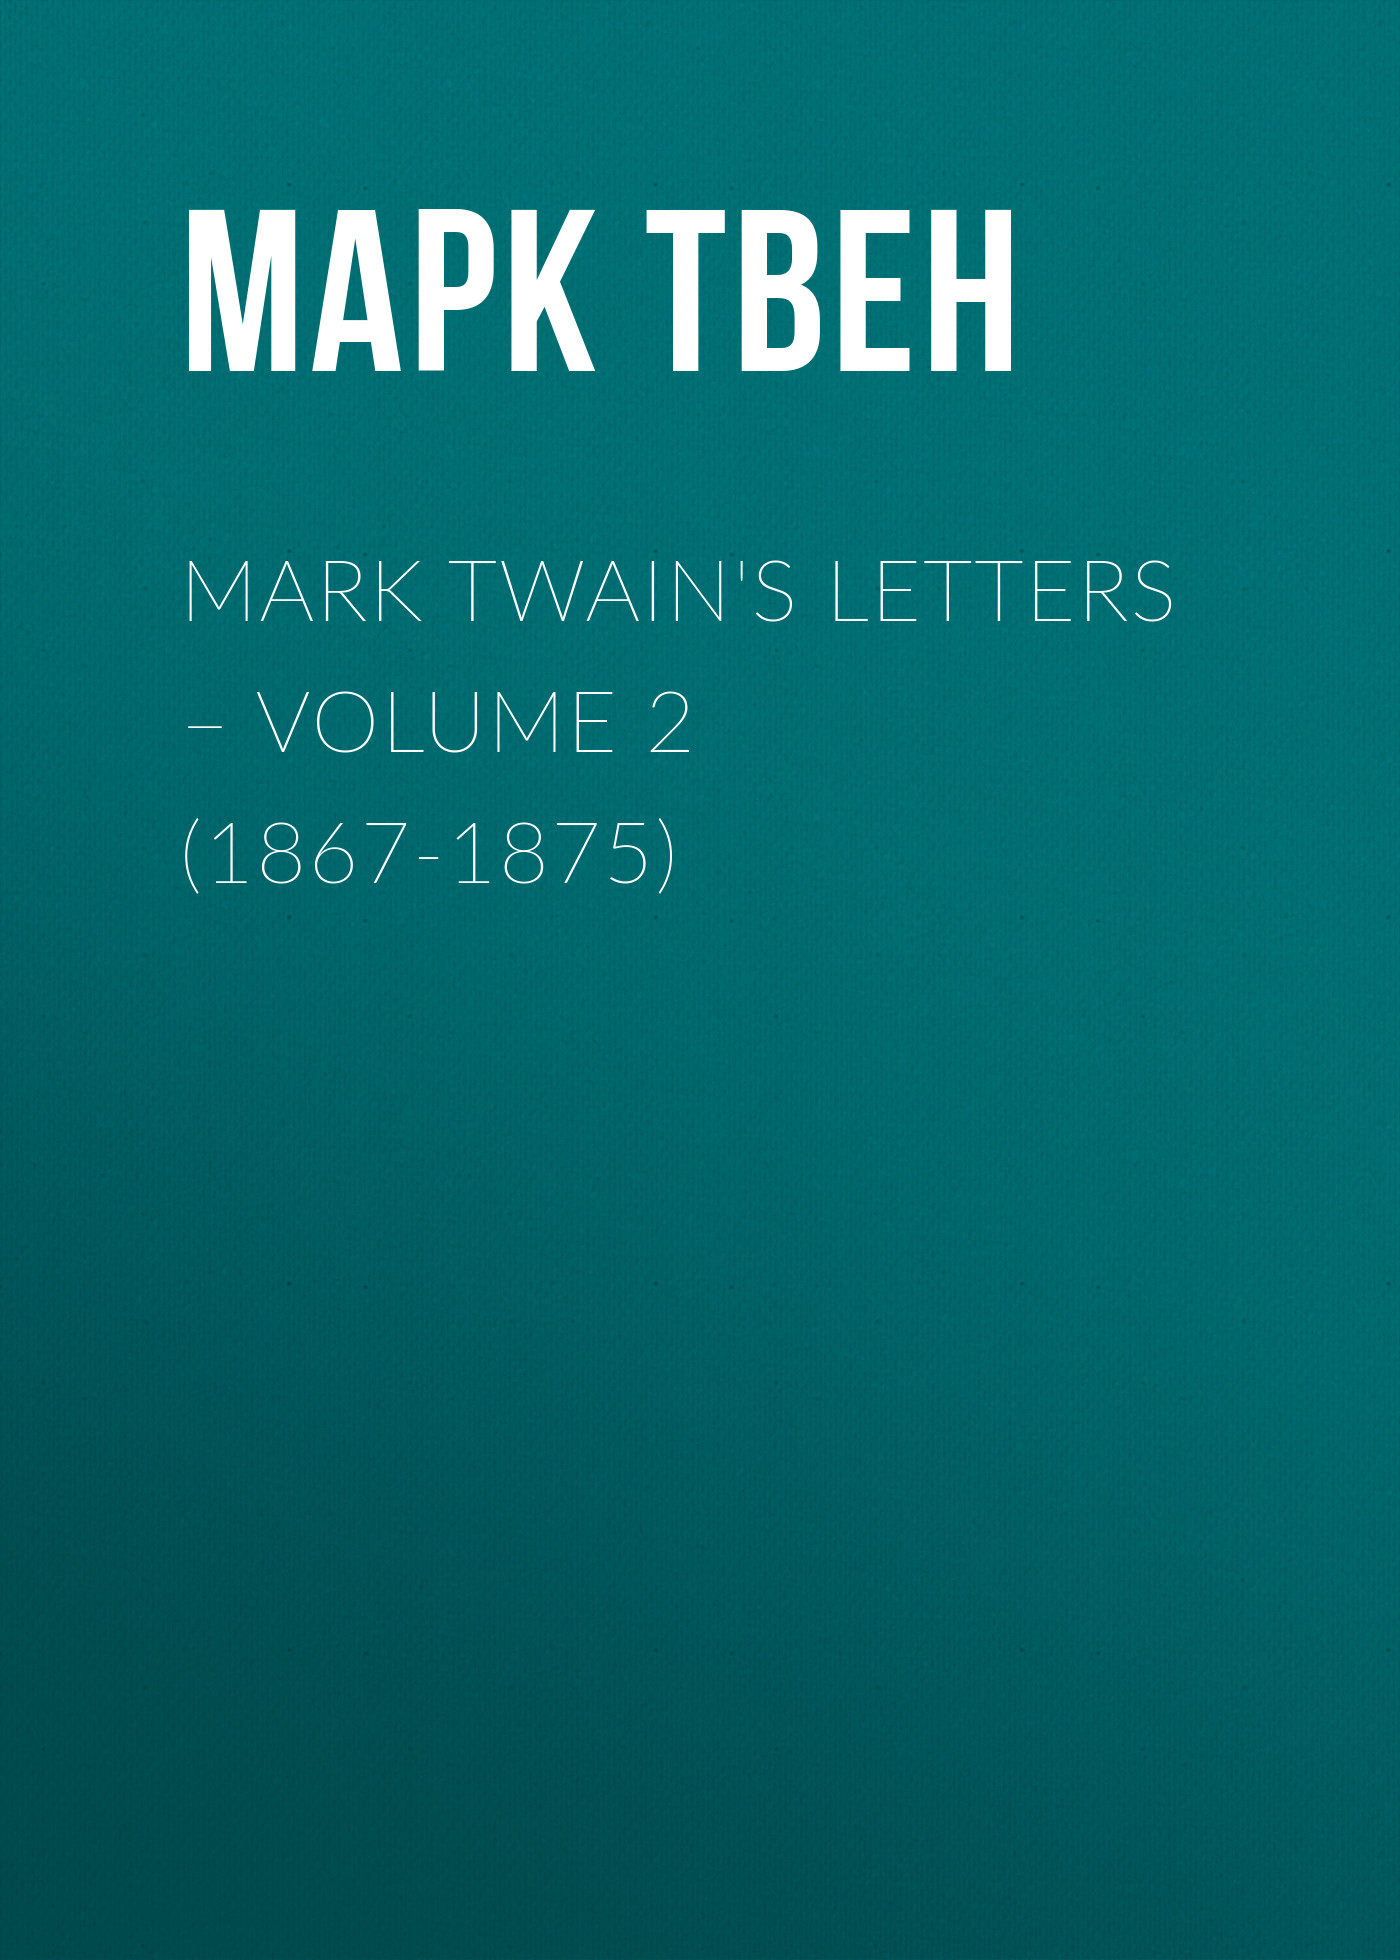 Книга Mark Twain's Letters – Volume 2 (1867-1875) из серии , созданная Марк Твен, Albert Paine, может относится к жанру Зарубежная старинная литература, Зарубежная классика. Стоимость электронной книги Mark Twain's Letters – Volume 2 (1867-1875) с идентификатором 25474823 составляет 0 руб.